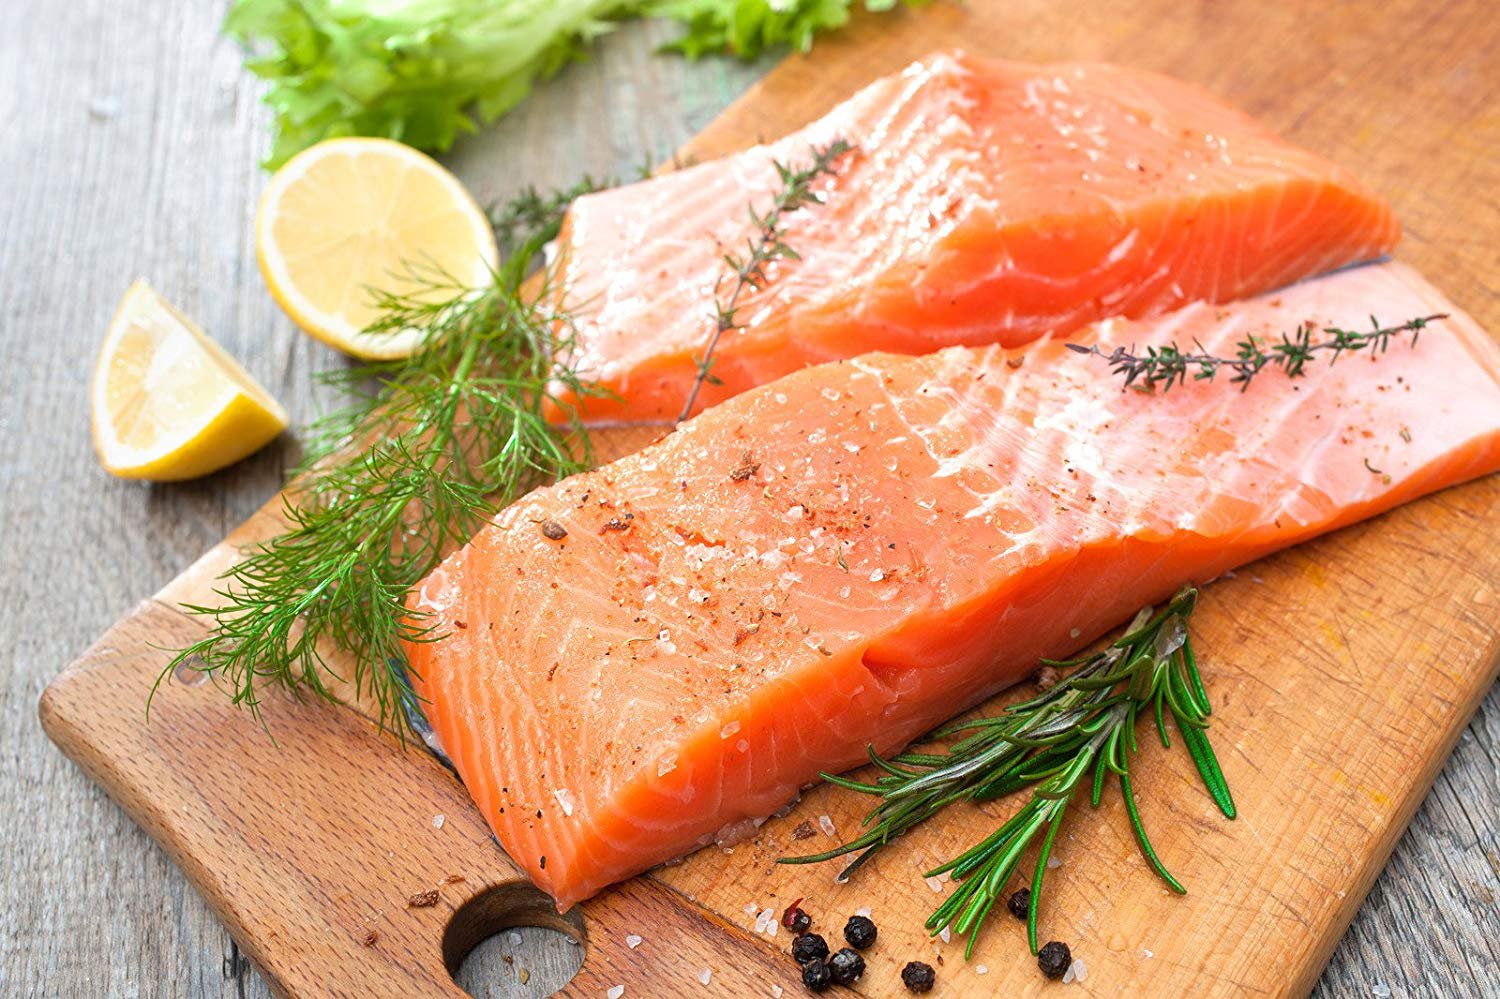 Cá hồi được cho là thực phẩm giàu dinh dưỡng giúp bổ sung các dưỡng chất cần thiết cho cơ thể